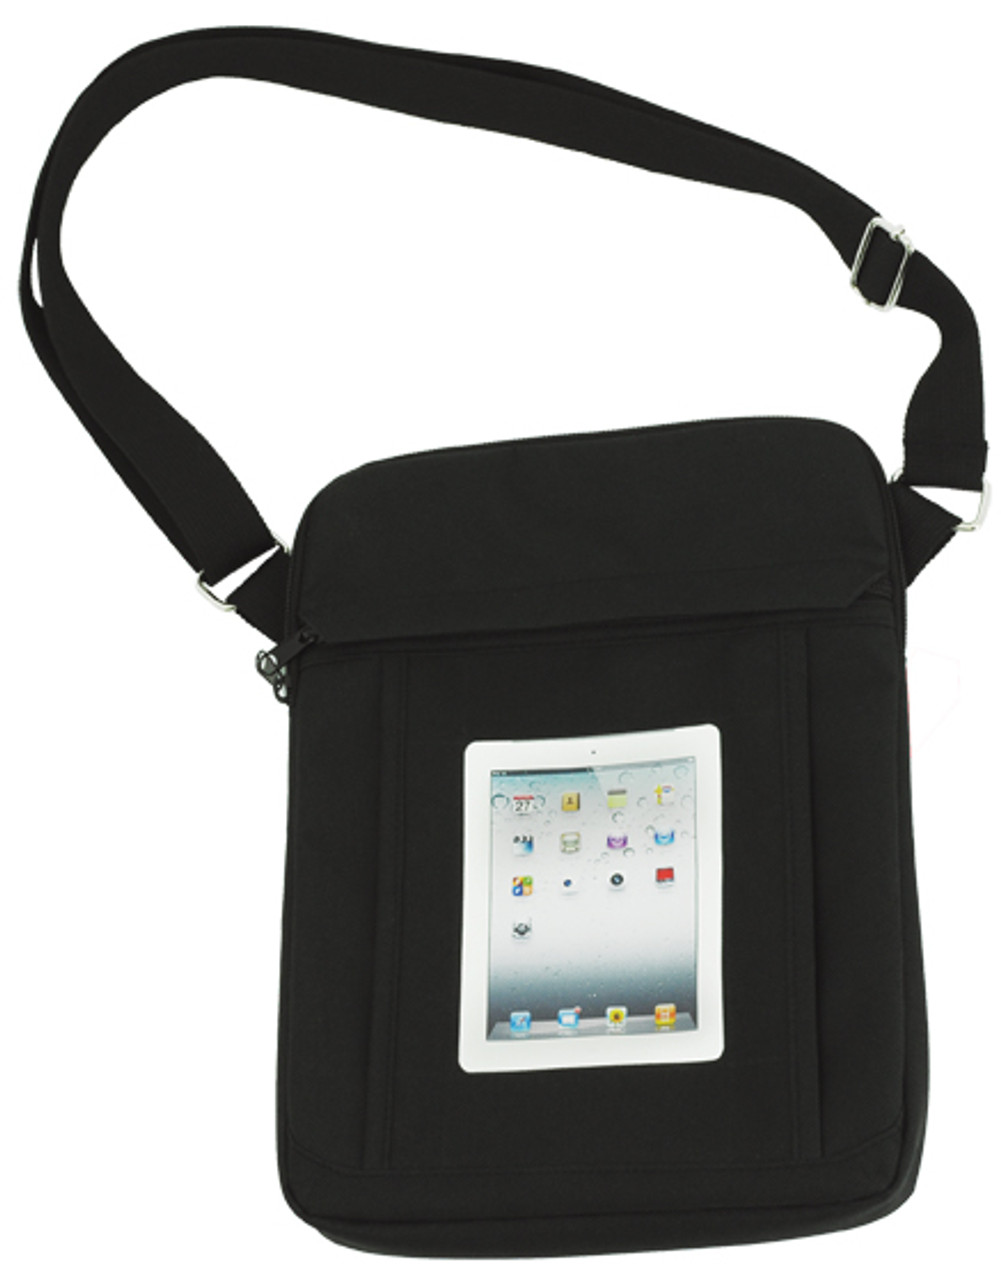 Saco Pouch for Tablet Apple 64 GB iPad Air Bag Sleeve Sleeve Cover Green   Saco  Flipkartcom